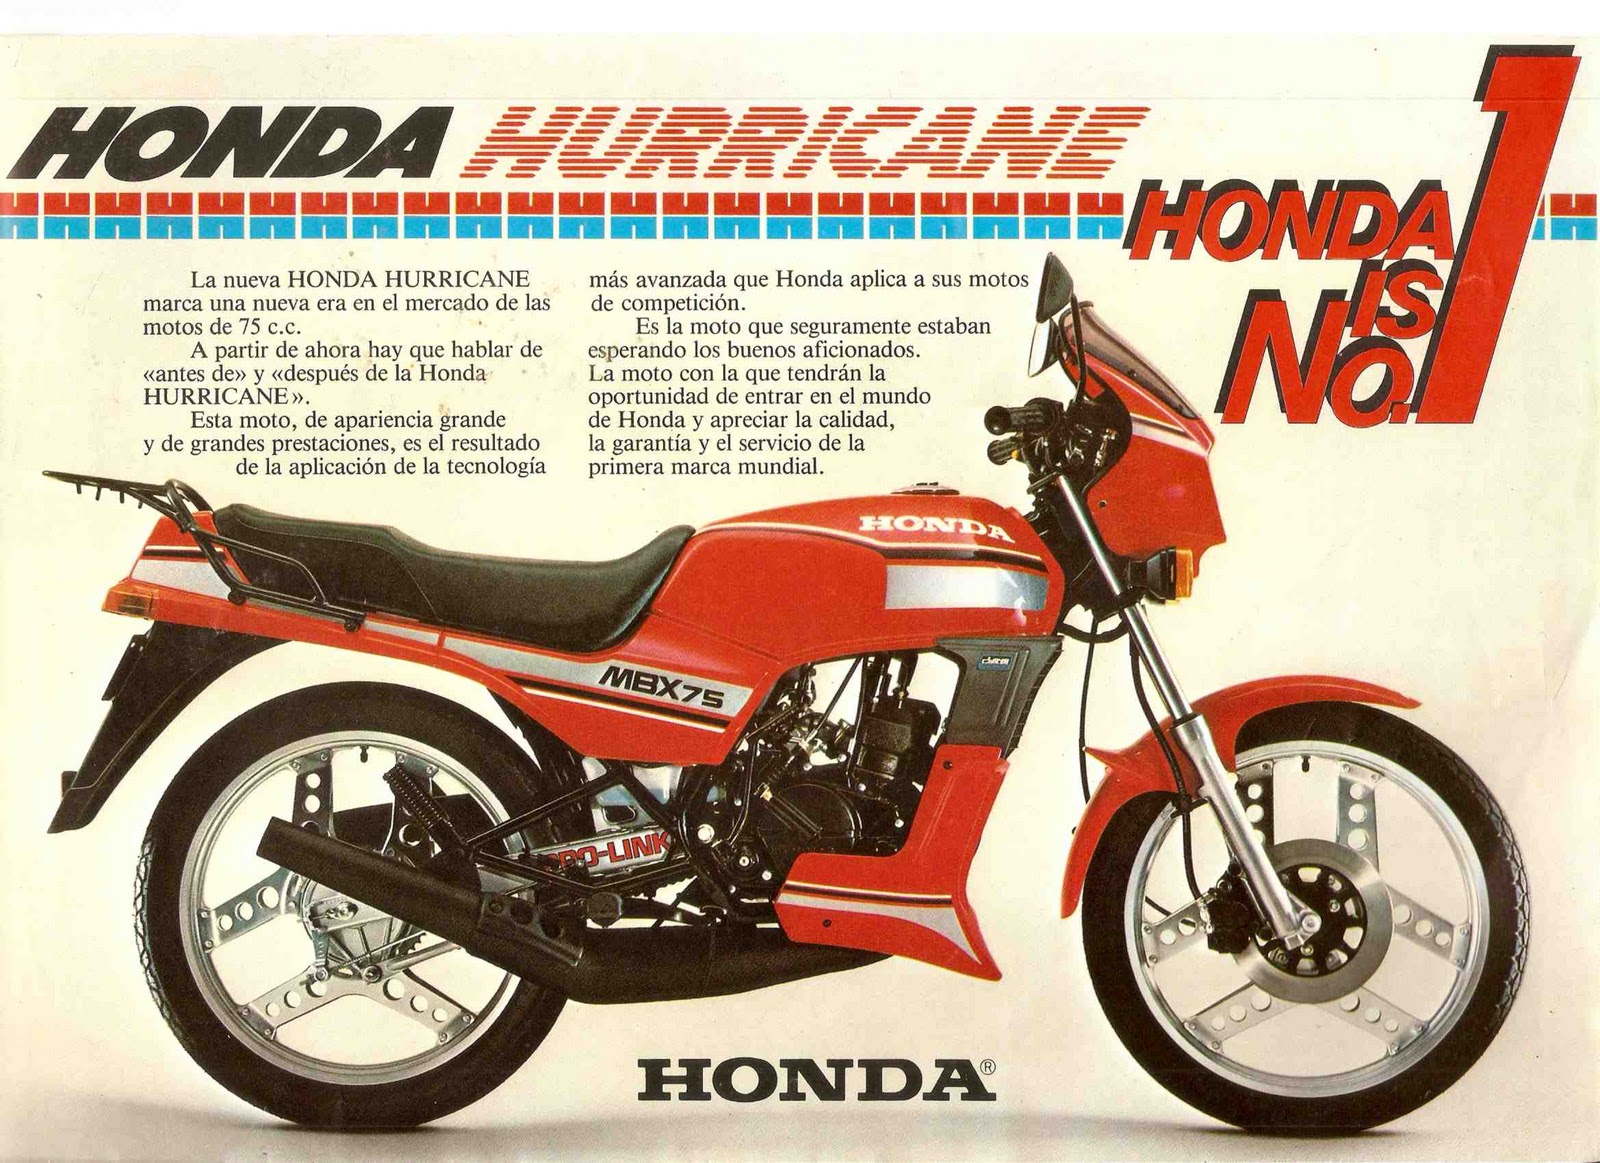 VOROMV Moto: Historia de la Moto - Honda Hurricane MBX75